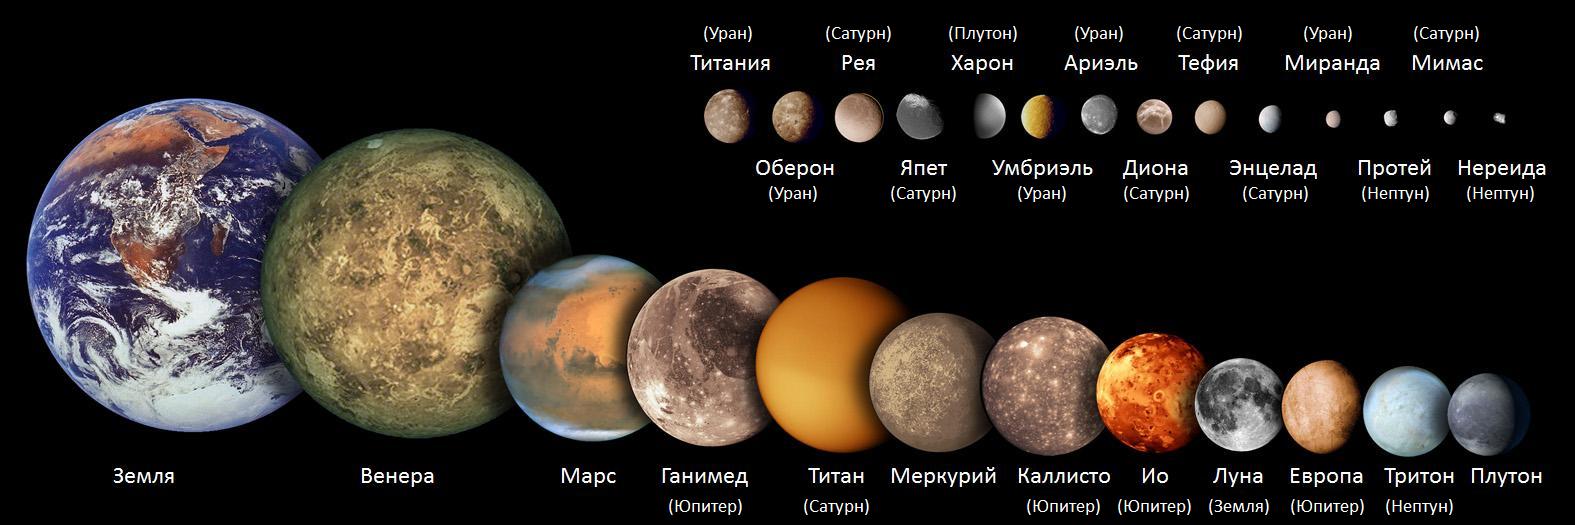 фотографии планет солнечной системы натуральные